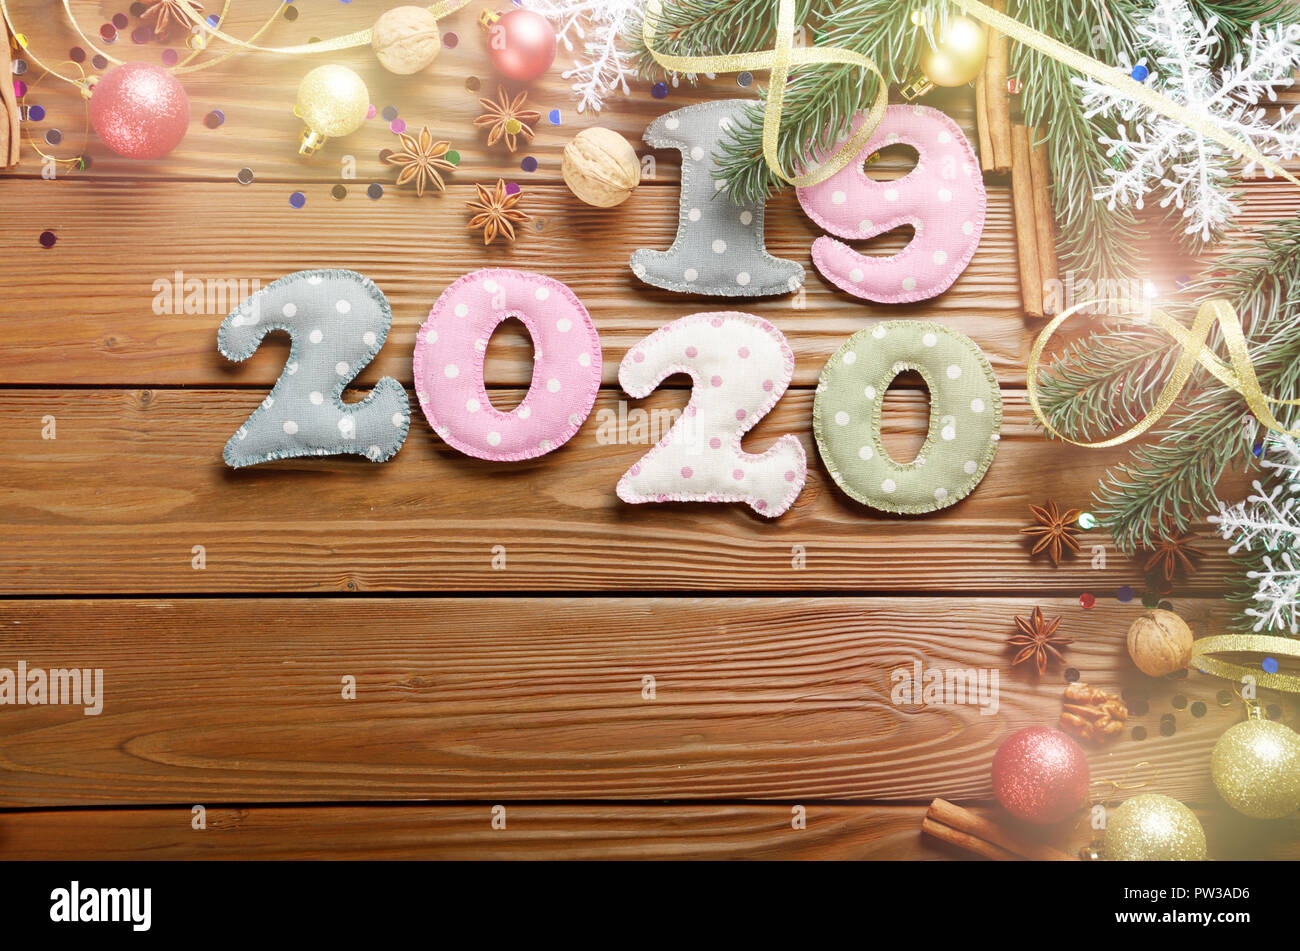 Bunte gestickte Ziffern 2019 bis 2020 polkadot Stoff mit Weihnachtsschmuck Flachbild lyed auf hölzernen Hintergrund Stockfoto